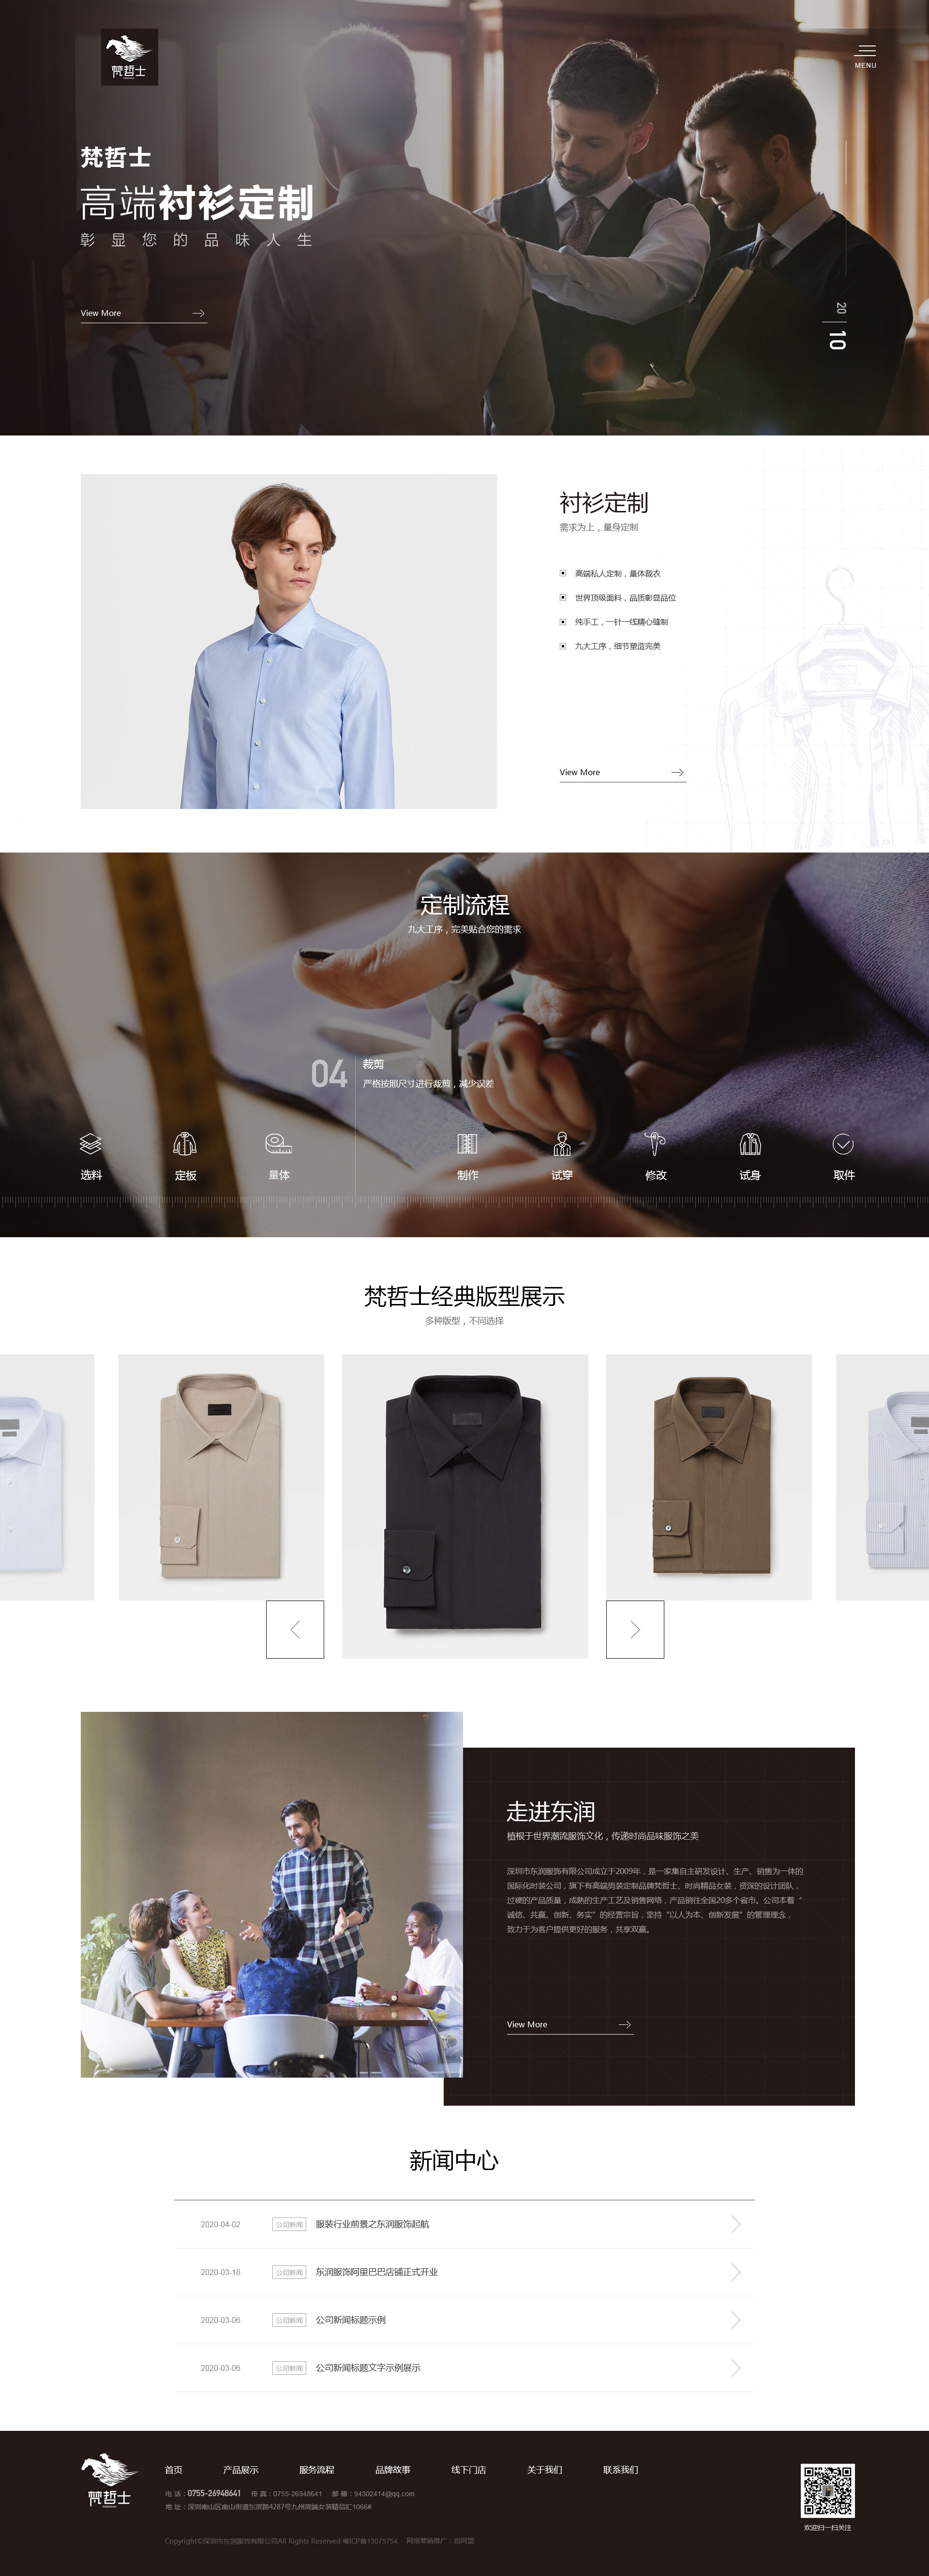 深圳市東潤服飾有限公司 頁面展示